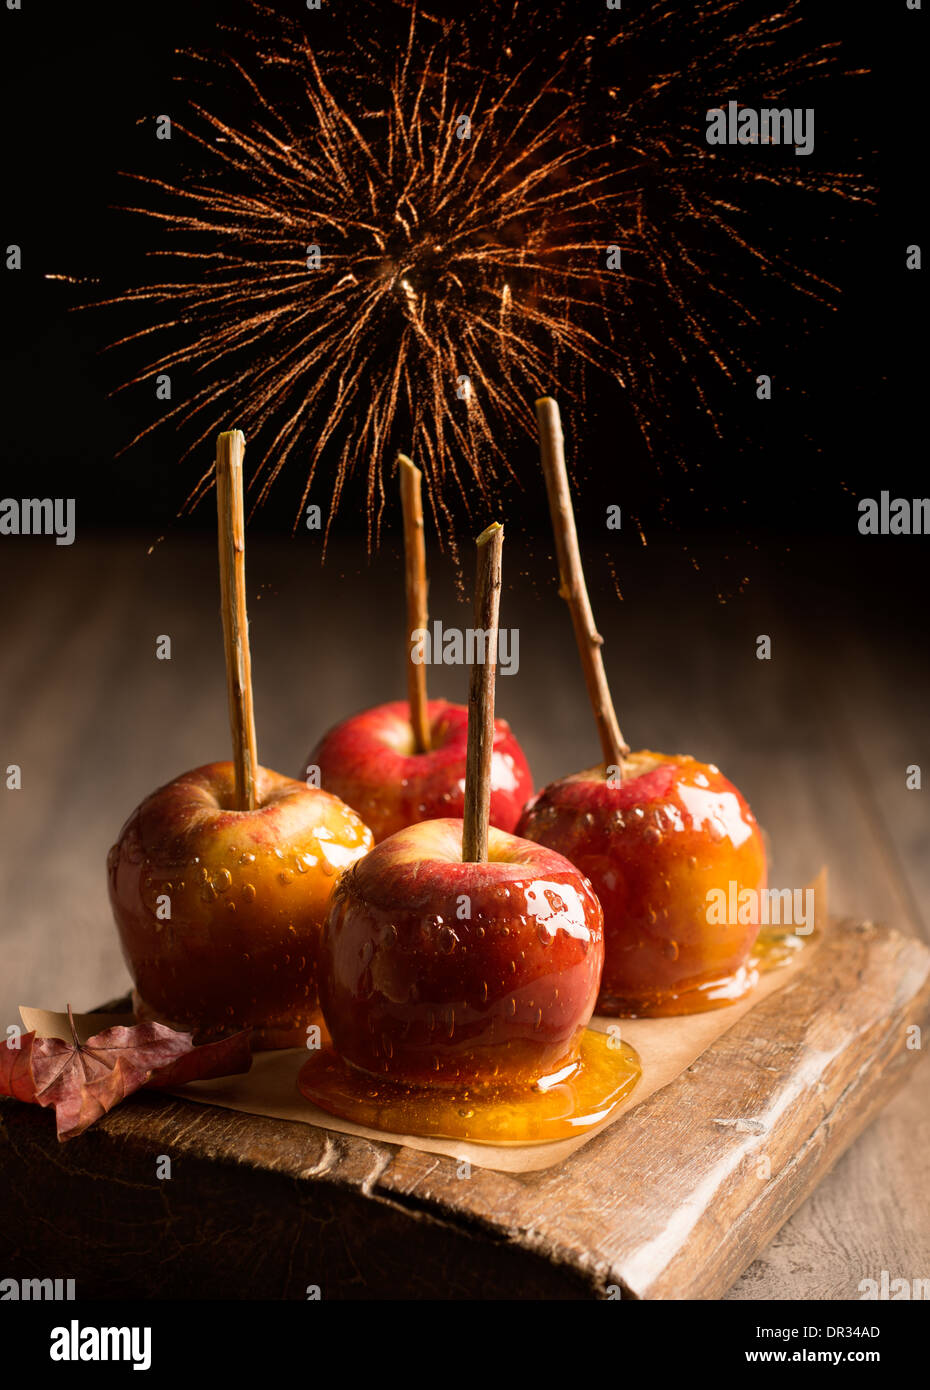 Grupo de manzanas de toffee en placa de madera rústica con fuegos artificiales en el fondo Foto de stock